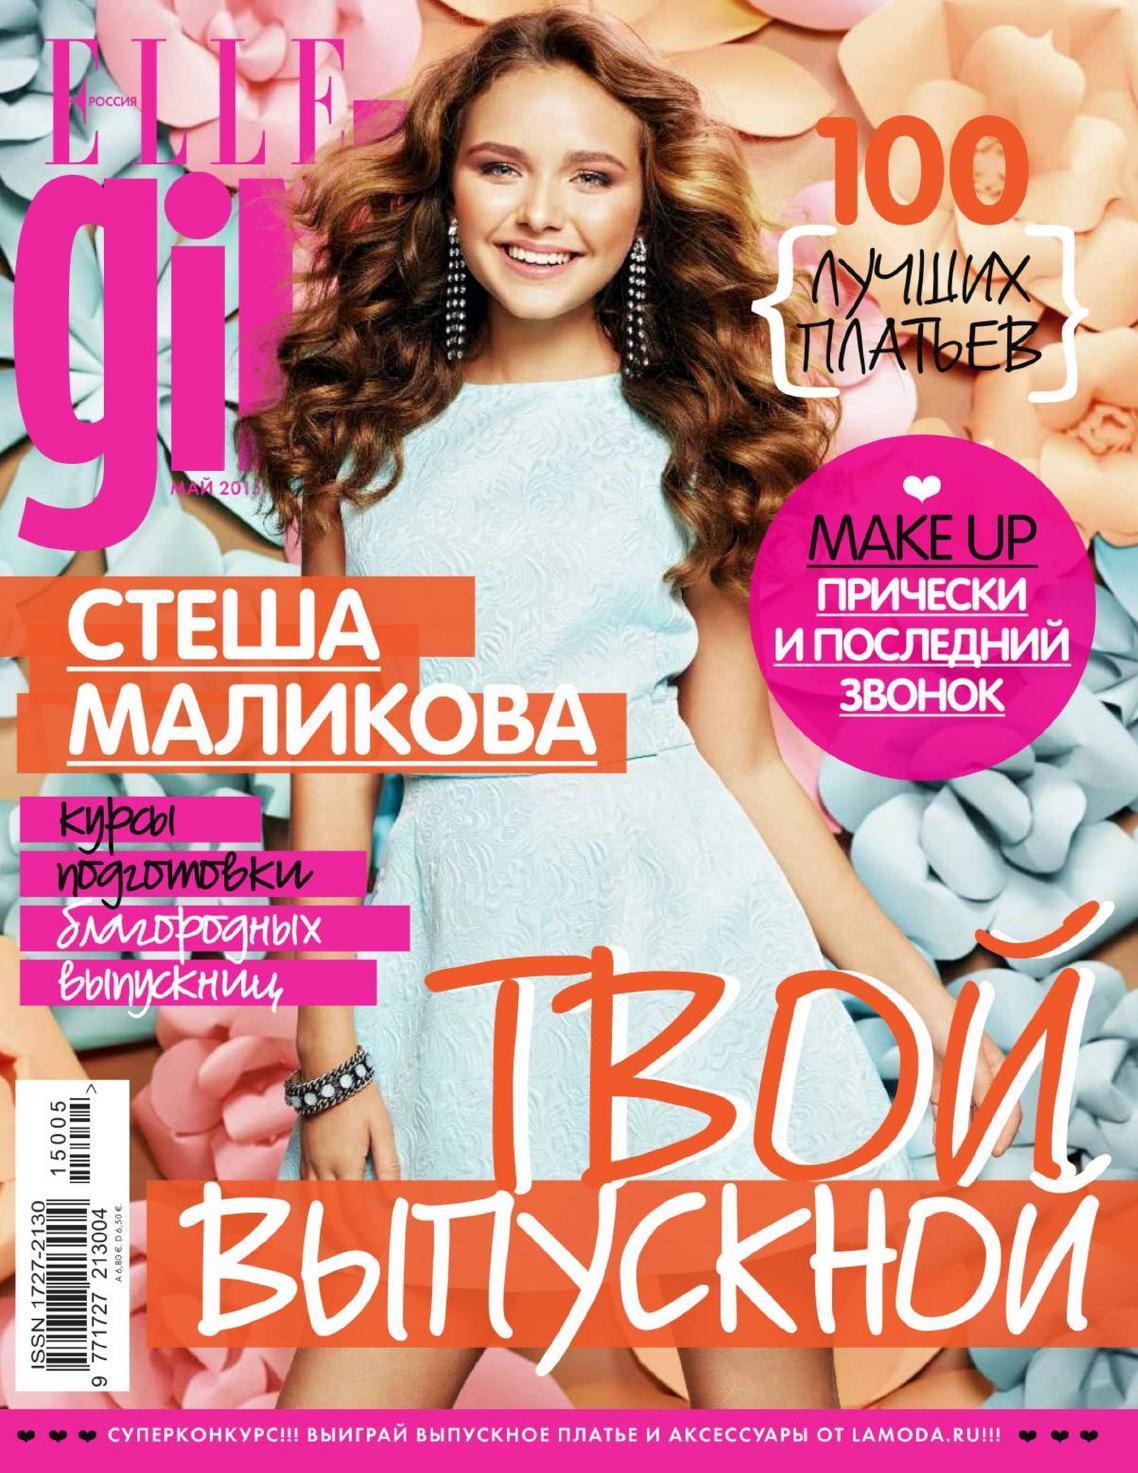 Со стешей. Стеша Маликова обложка журнала. Обложка для журнала. Девушка с журналом.